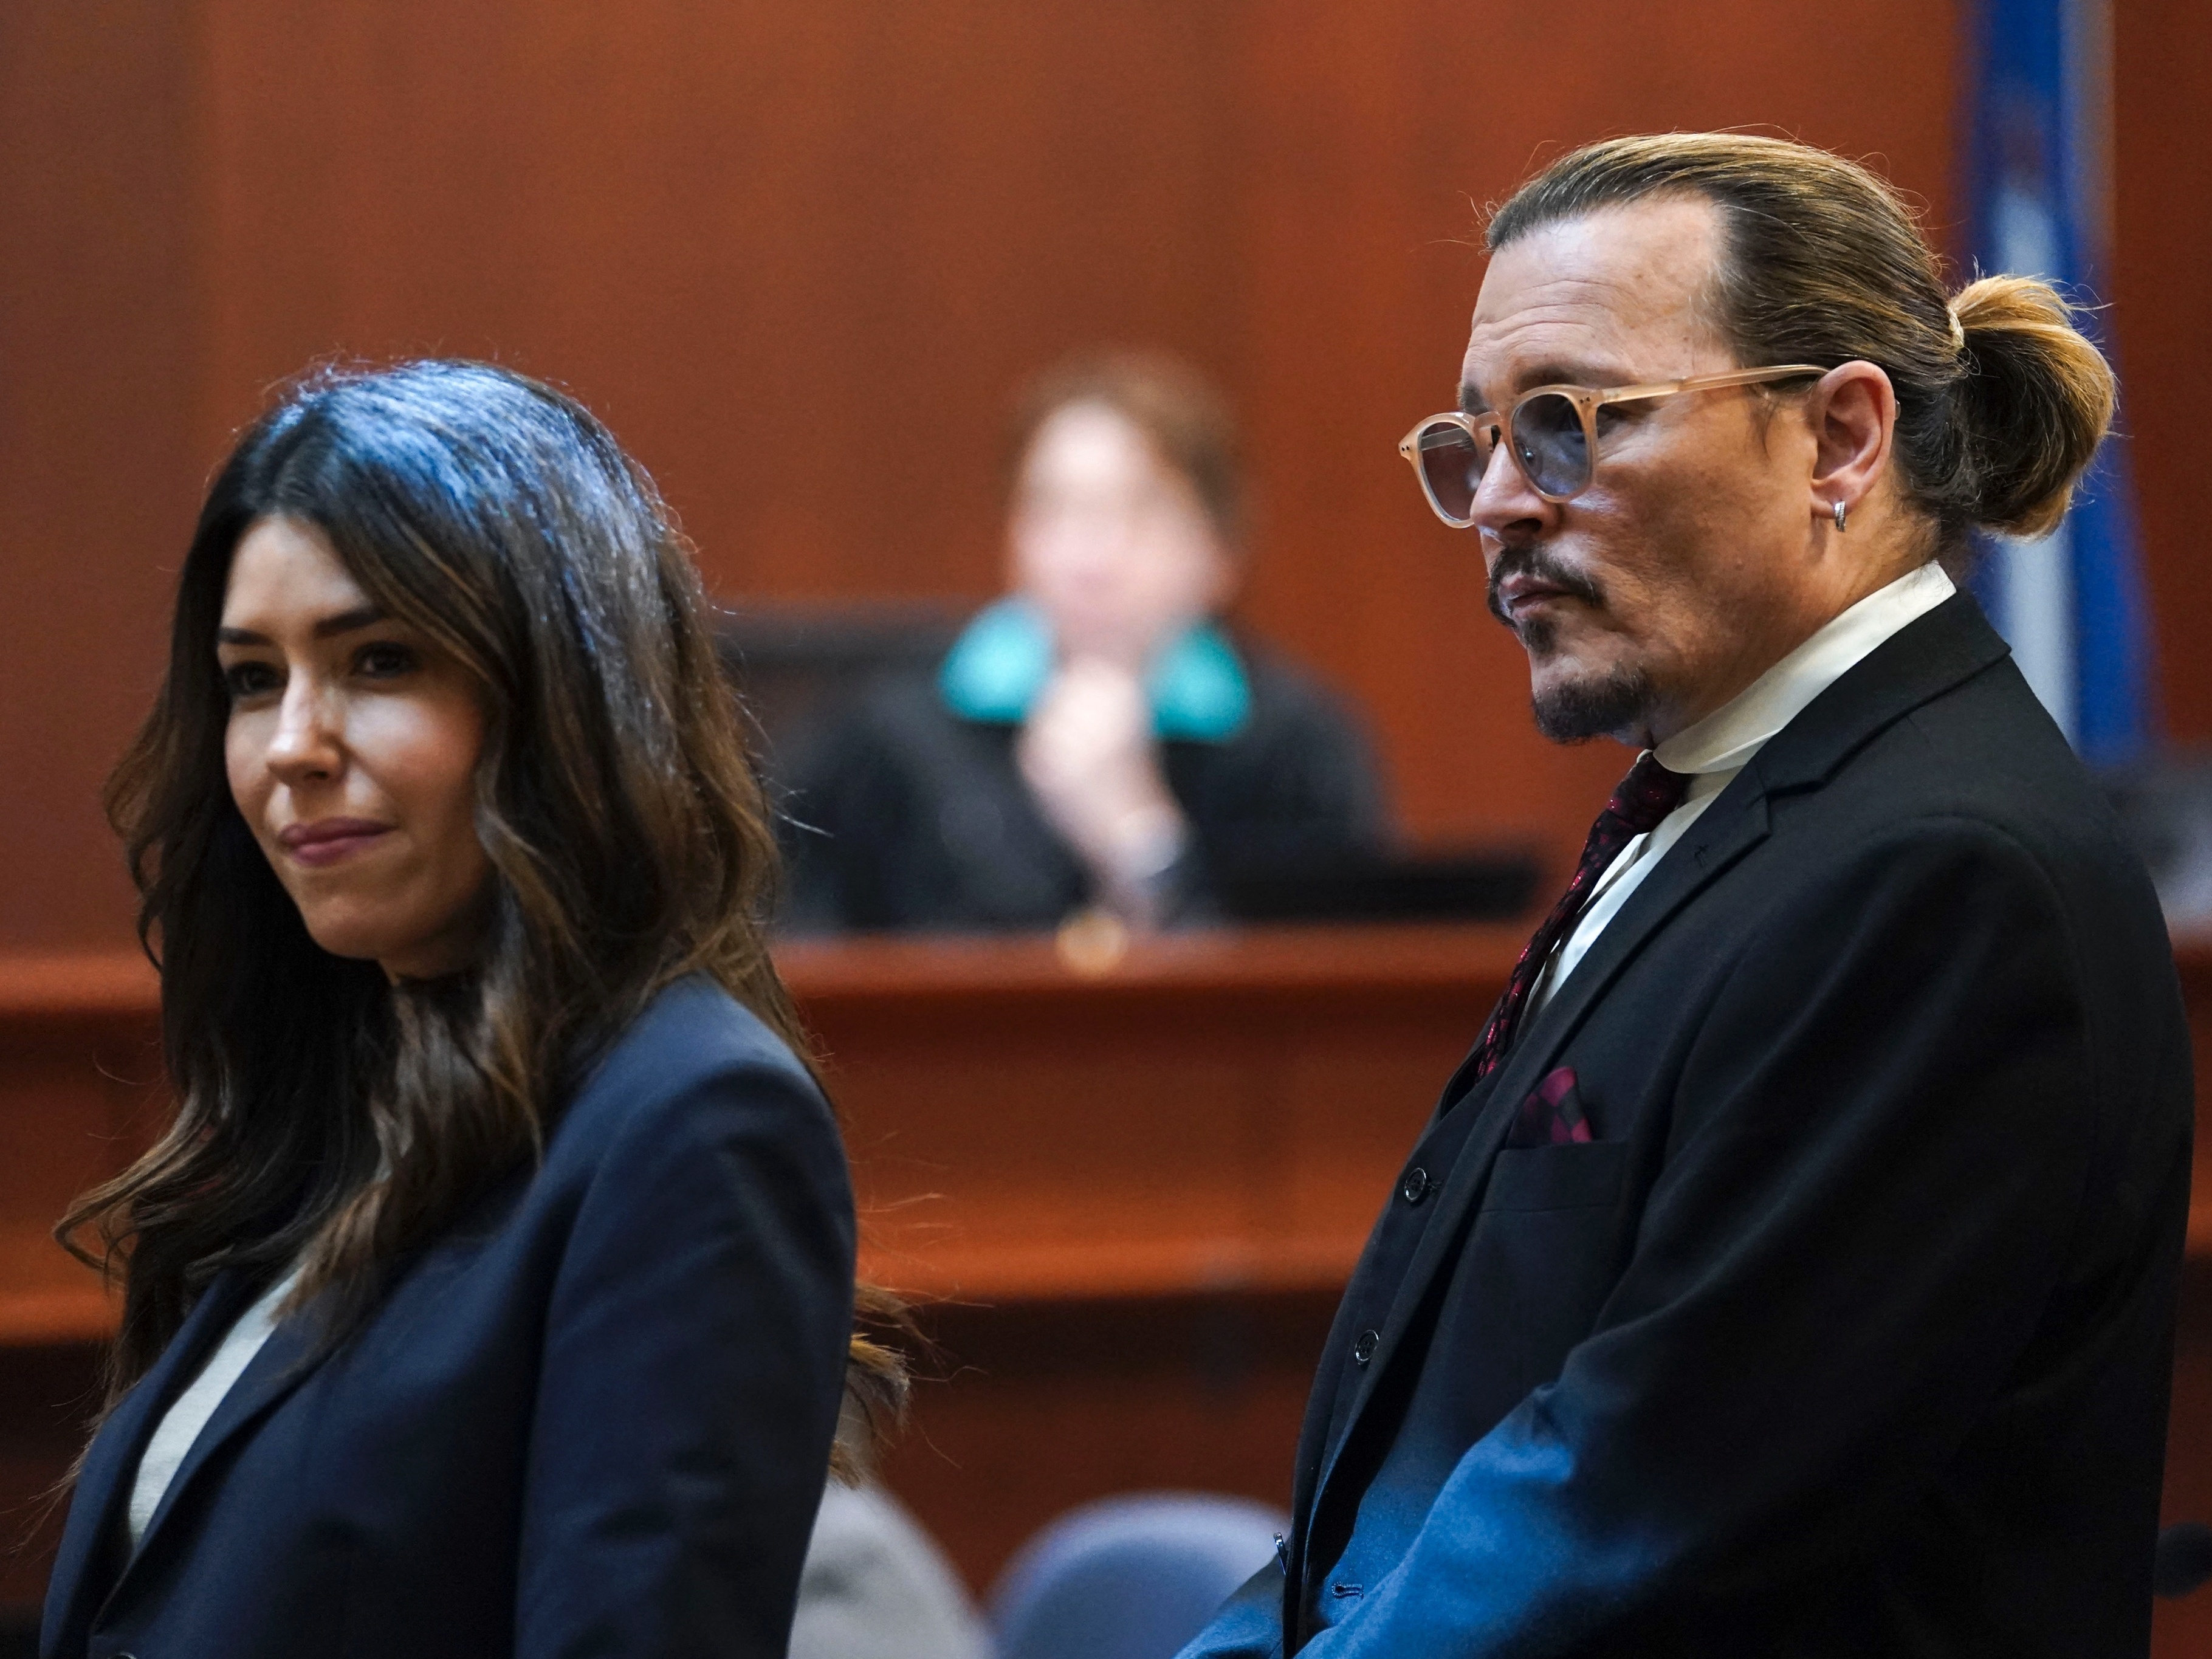 Cantora faz tatuagem da advogada de Johnny Depp, Camille Vasquez